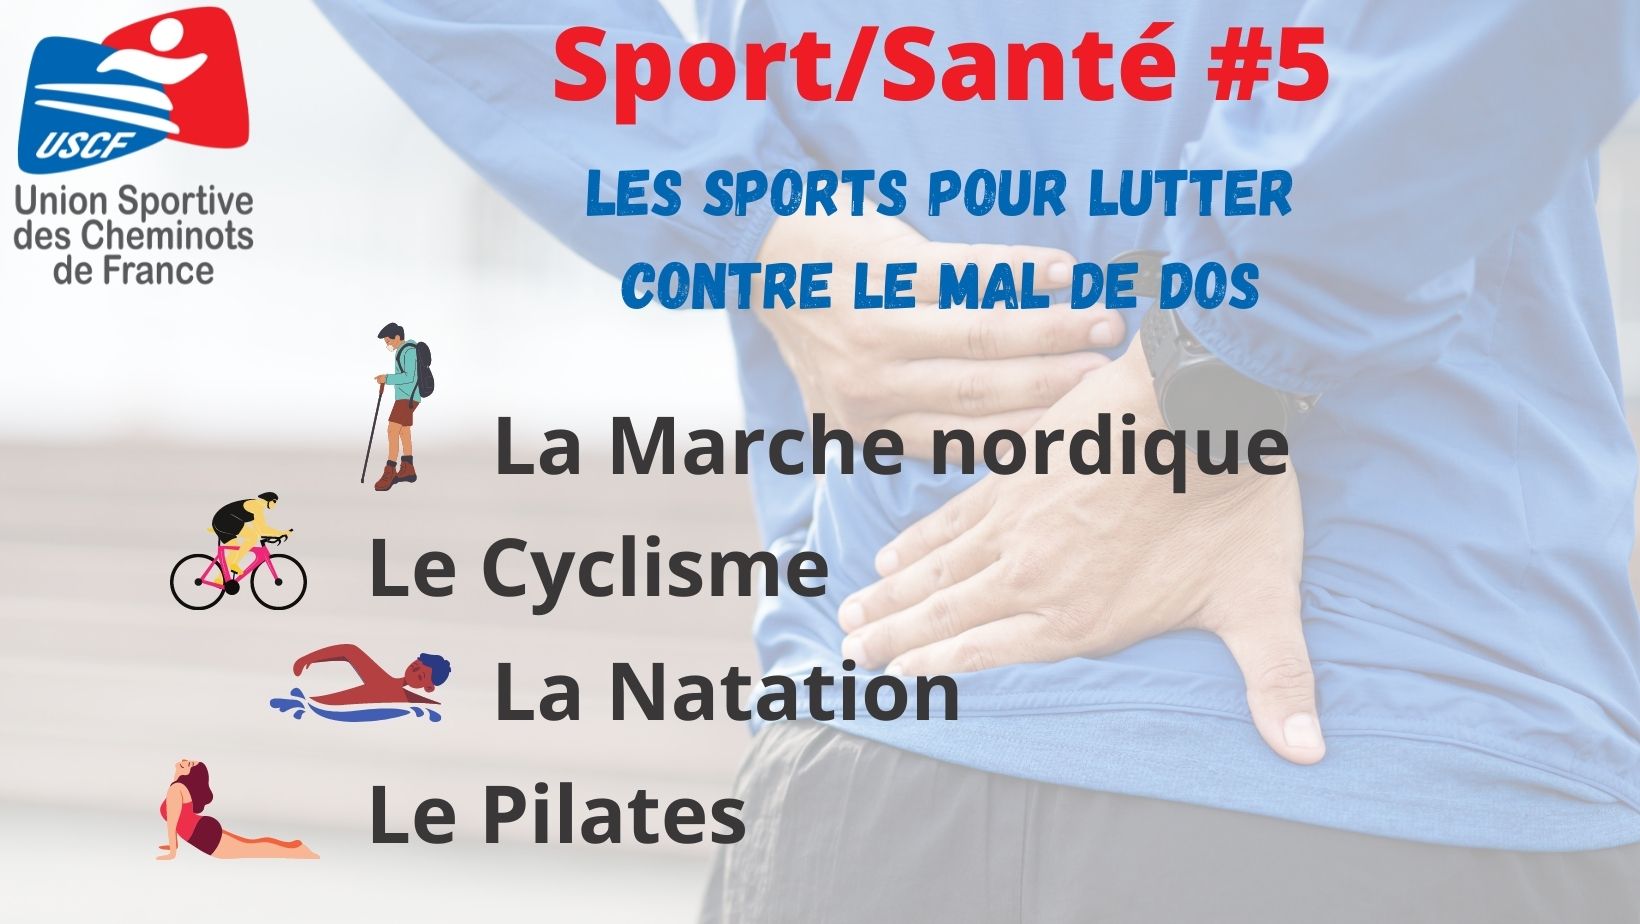 Sport Santé #5 : Les sports pour lutter contre le mal de dos